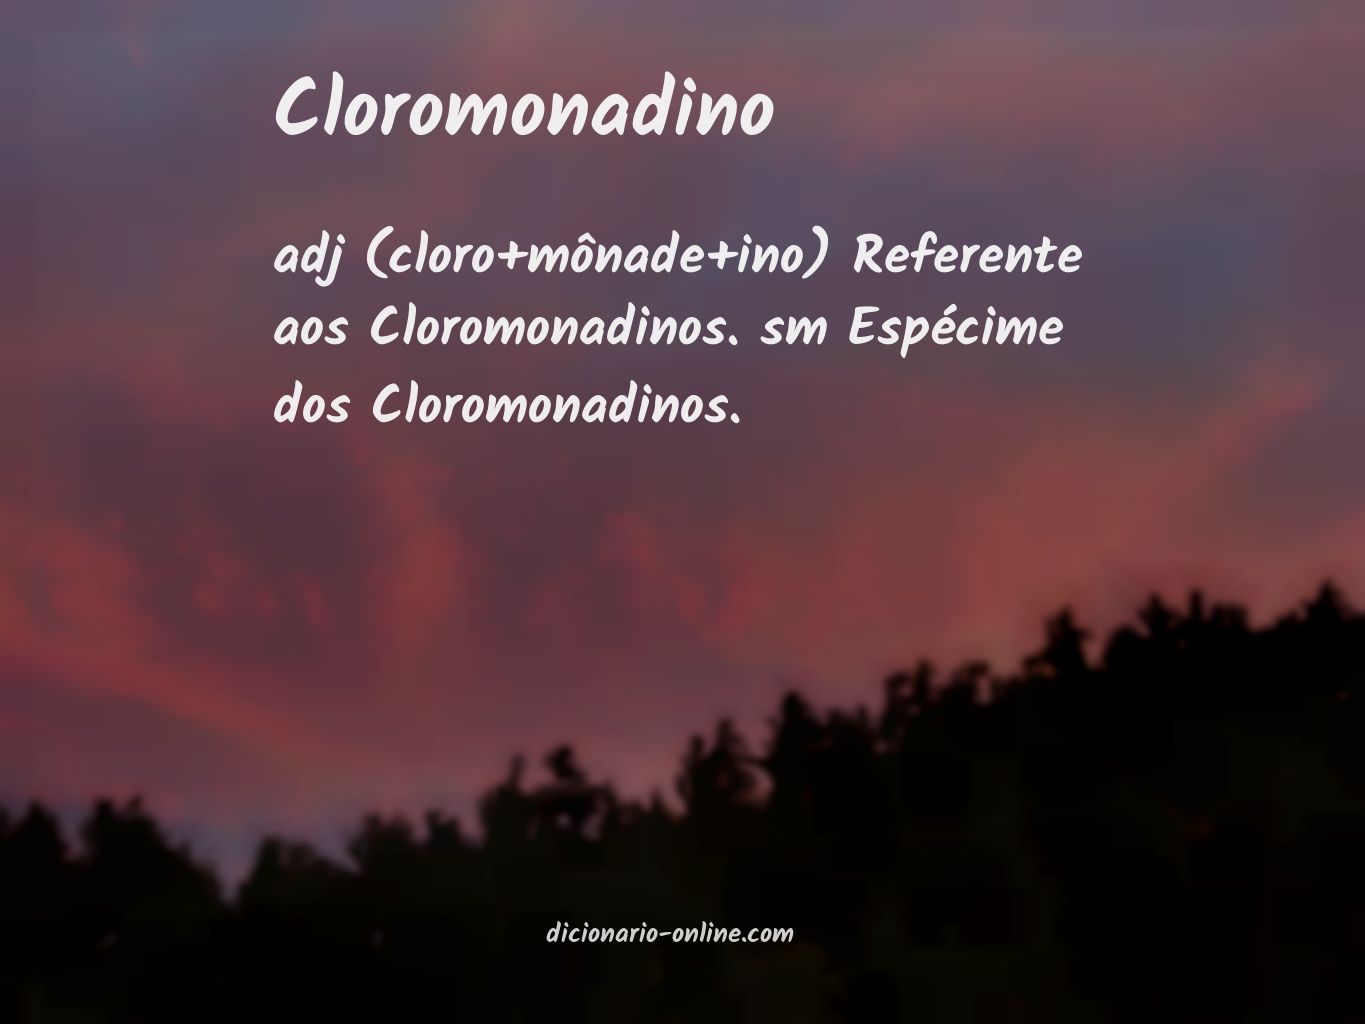 Significado de cloromonadino